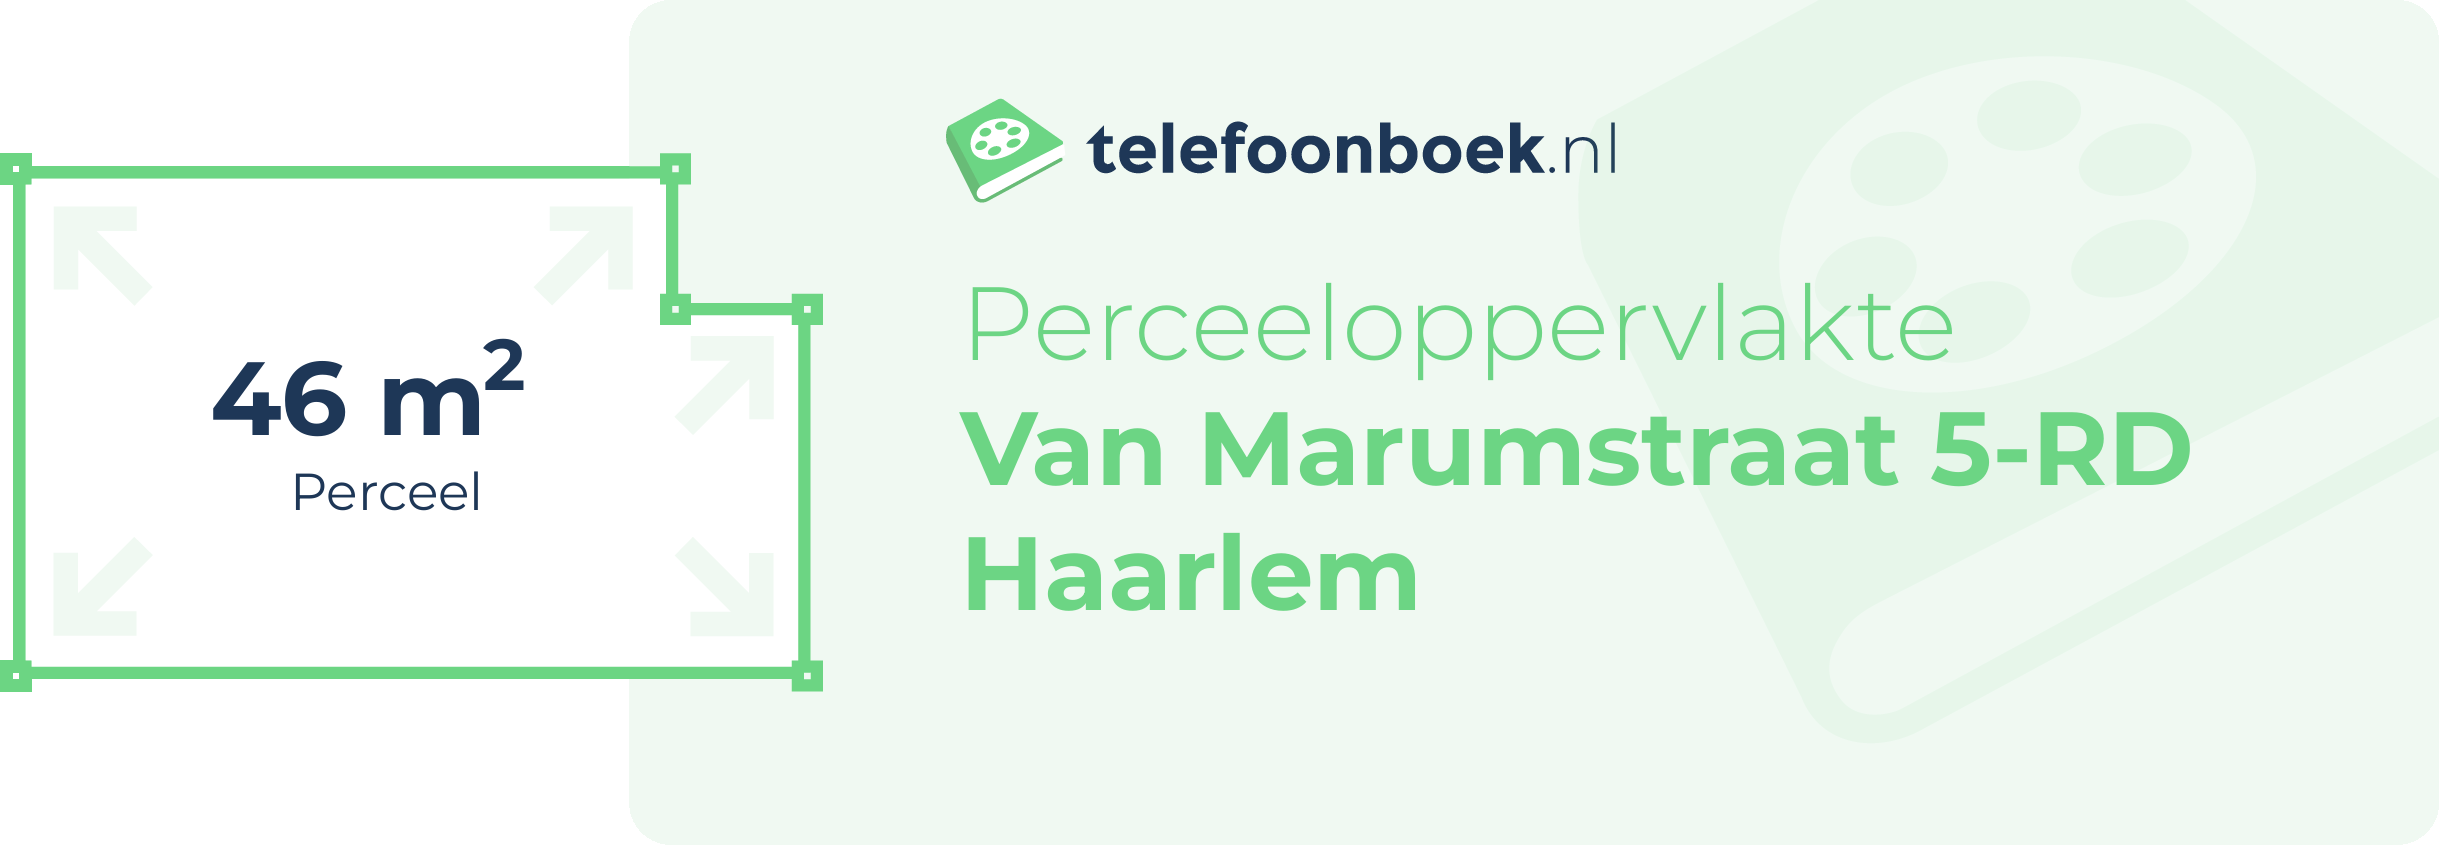 Perceeloppervlakte Van Marumstraat 5-RD Haarlem